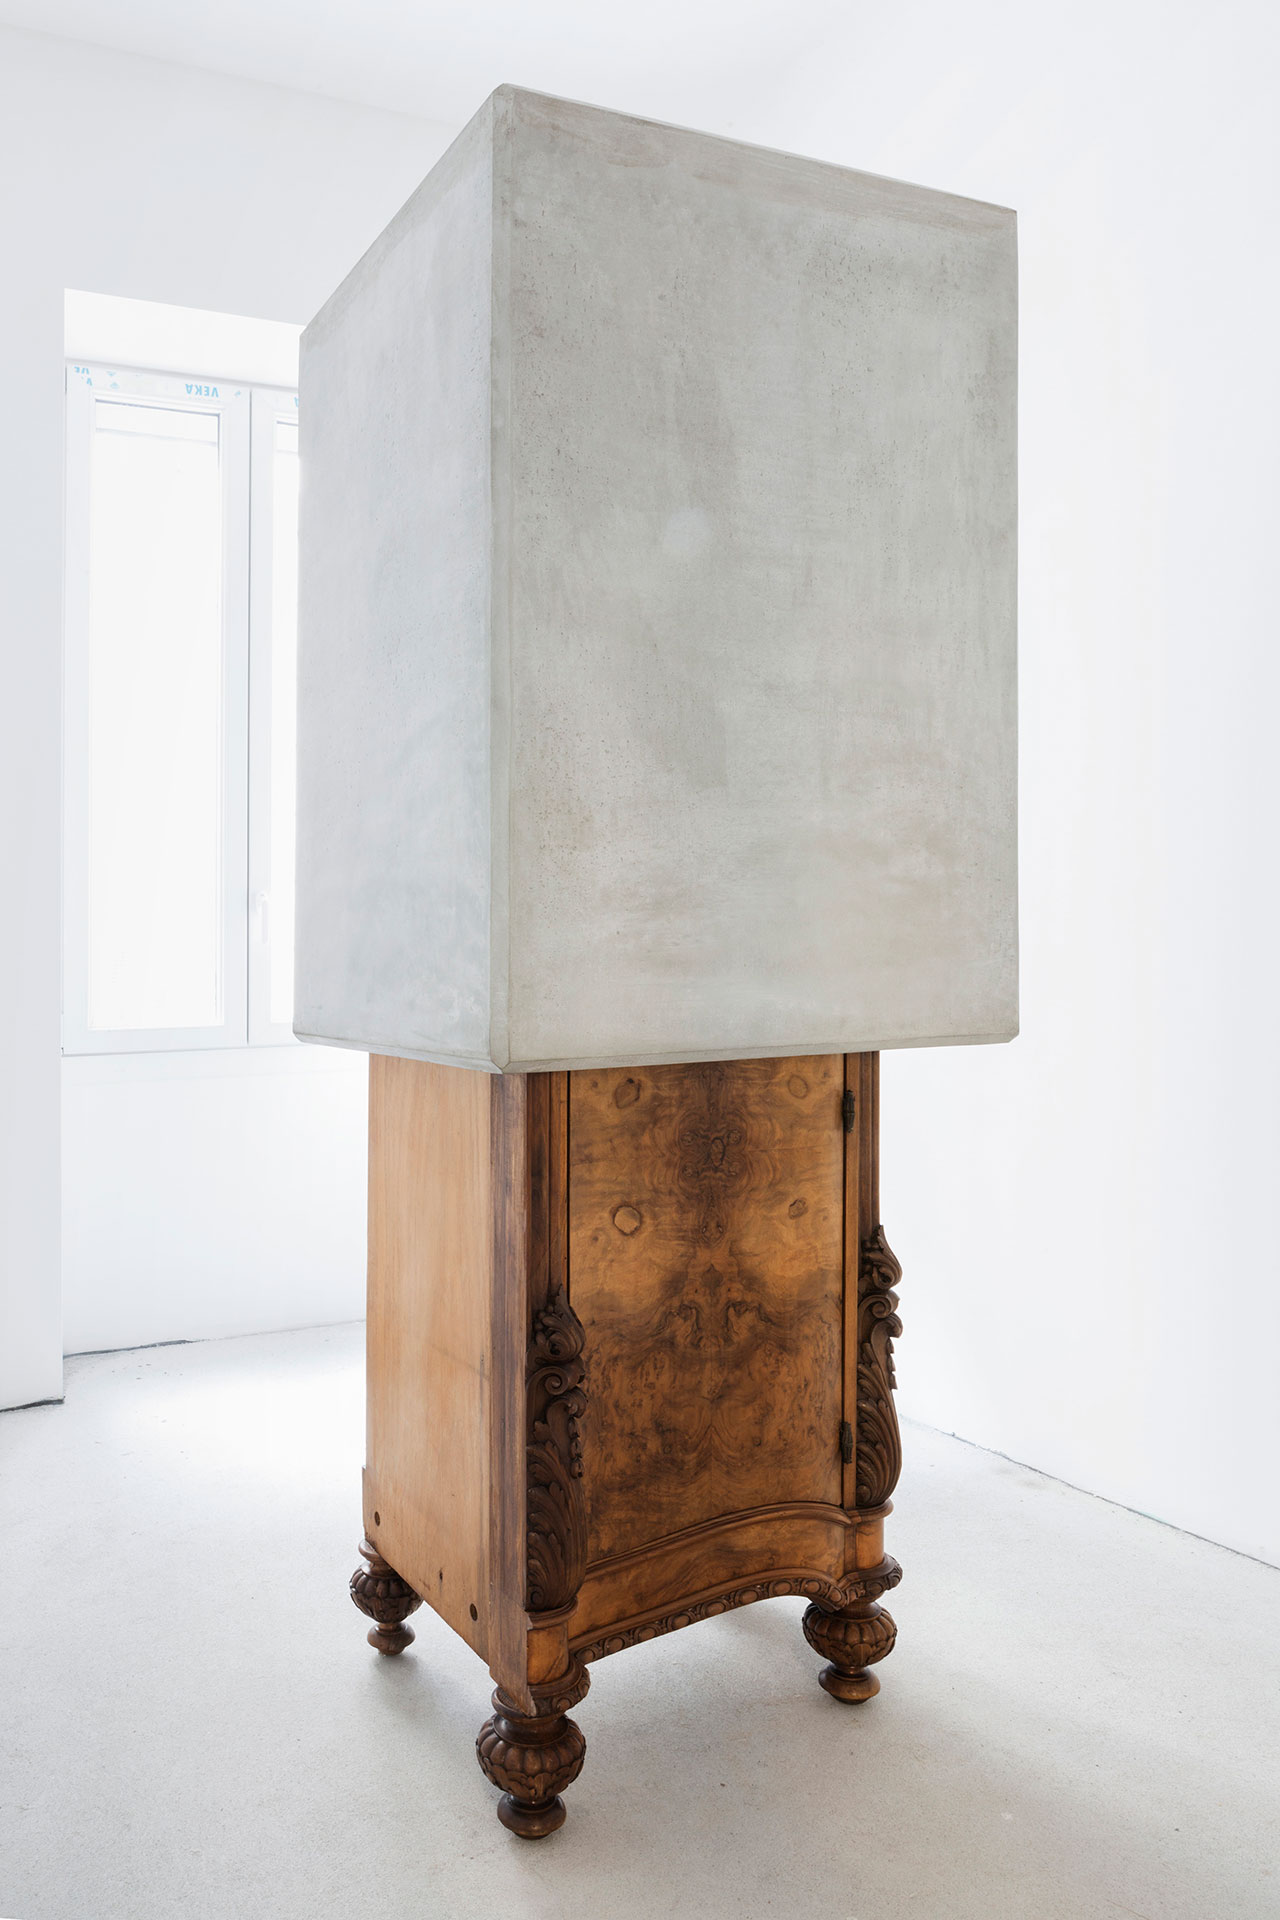 Nucleo (Piergiorgio Robino + Marzia Ricci), “Boolean” And  (Cabinet), 2017. Concrete, vintage furniture, 72 x 80 x 218h cm. Unique piece in an edition 1+1. Photo by Studio Pepe Fotografia.